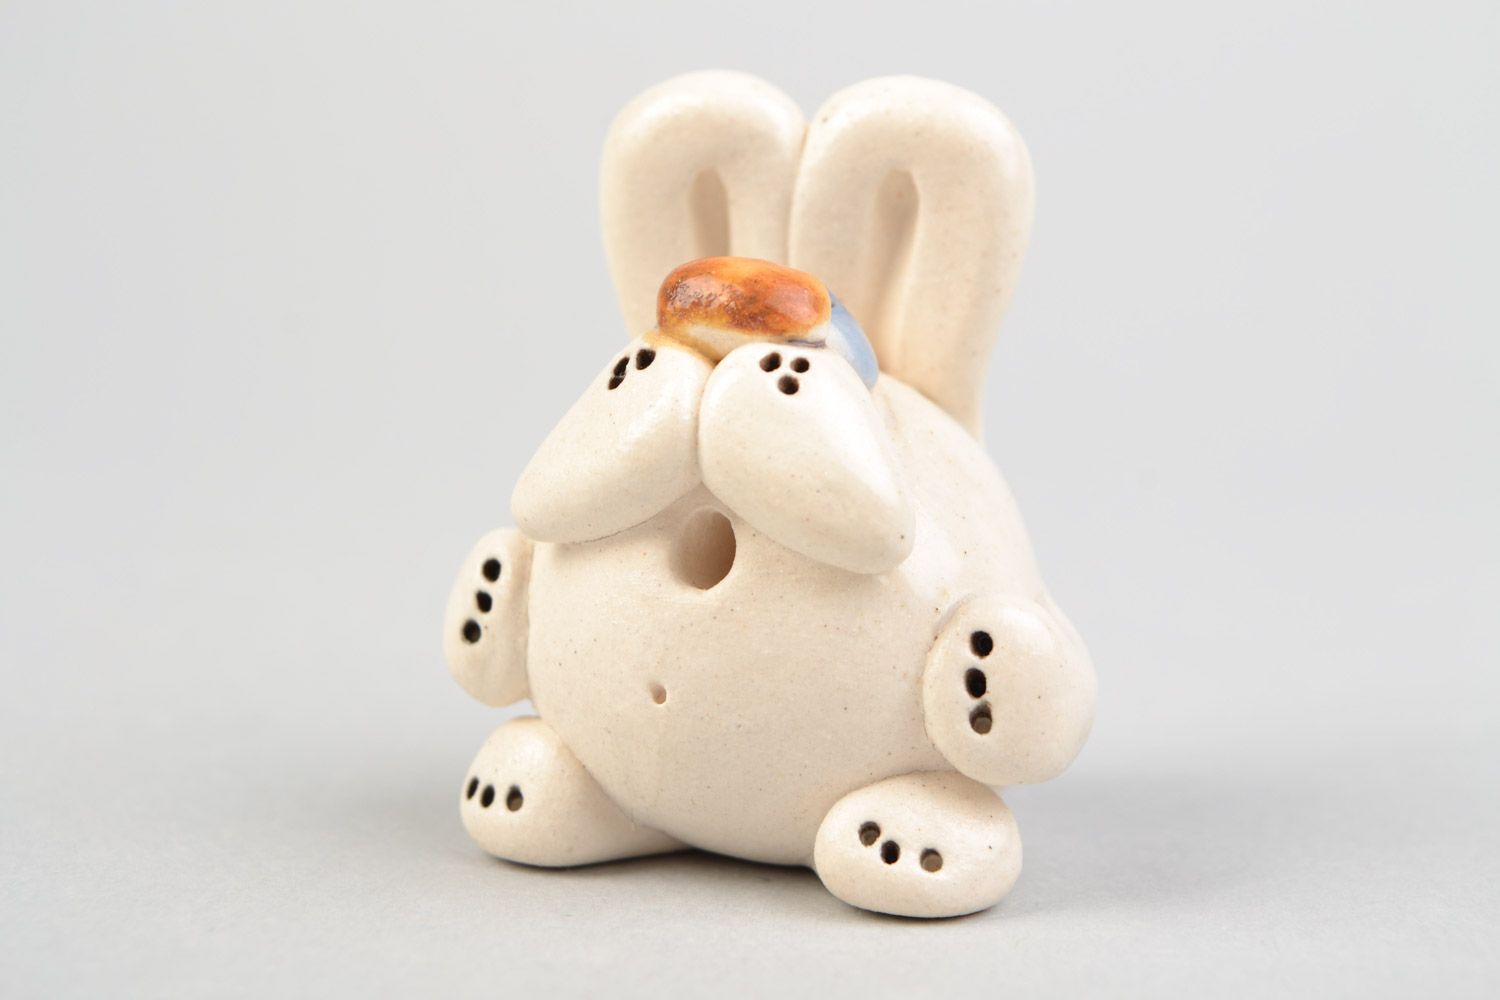 Авторская расписанная глазурью глиняная фигурка кролика малыша ручной работы фото 4